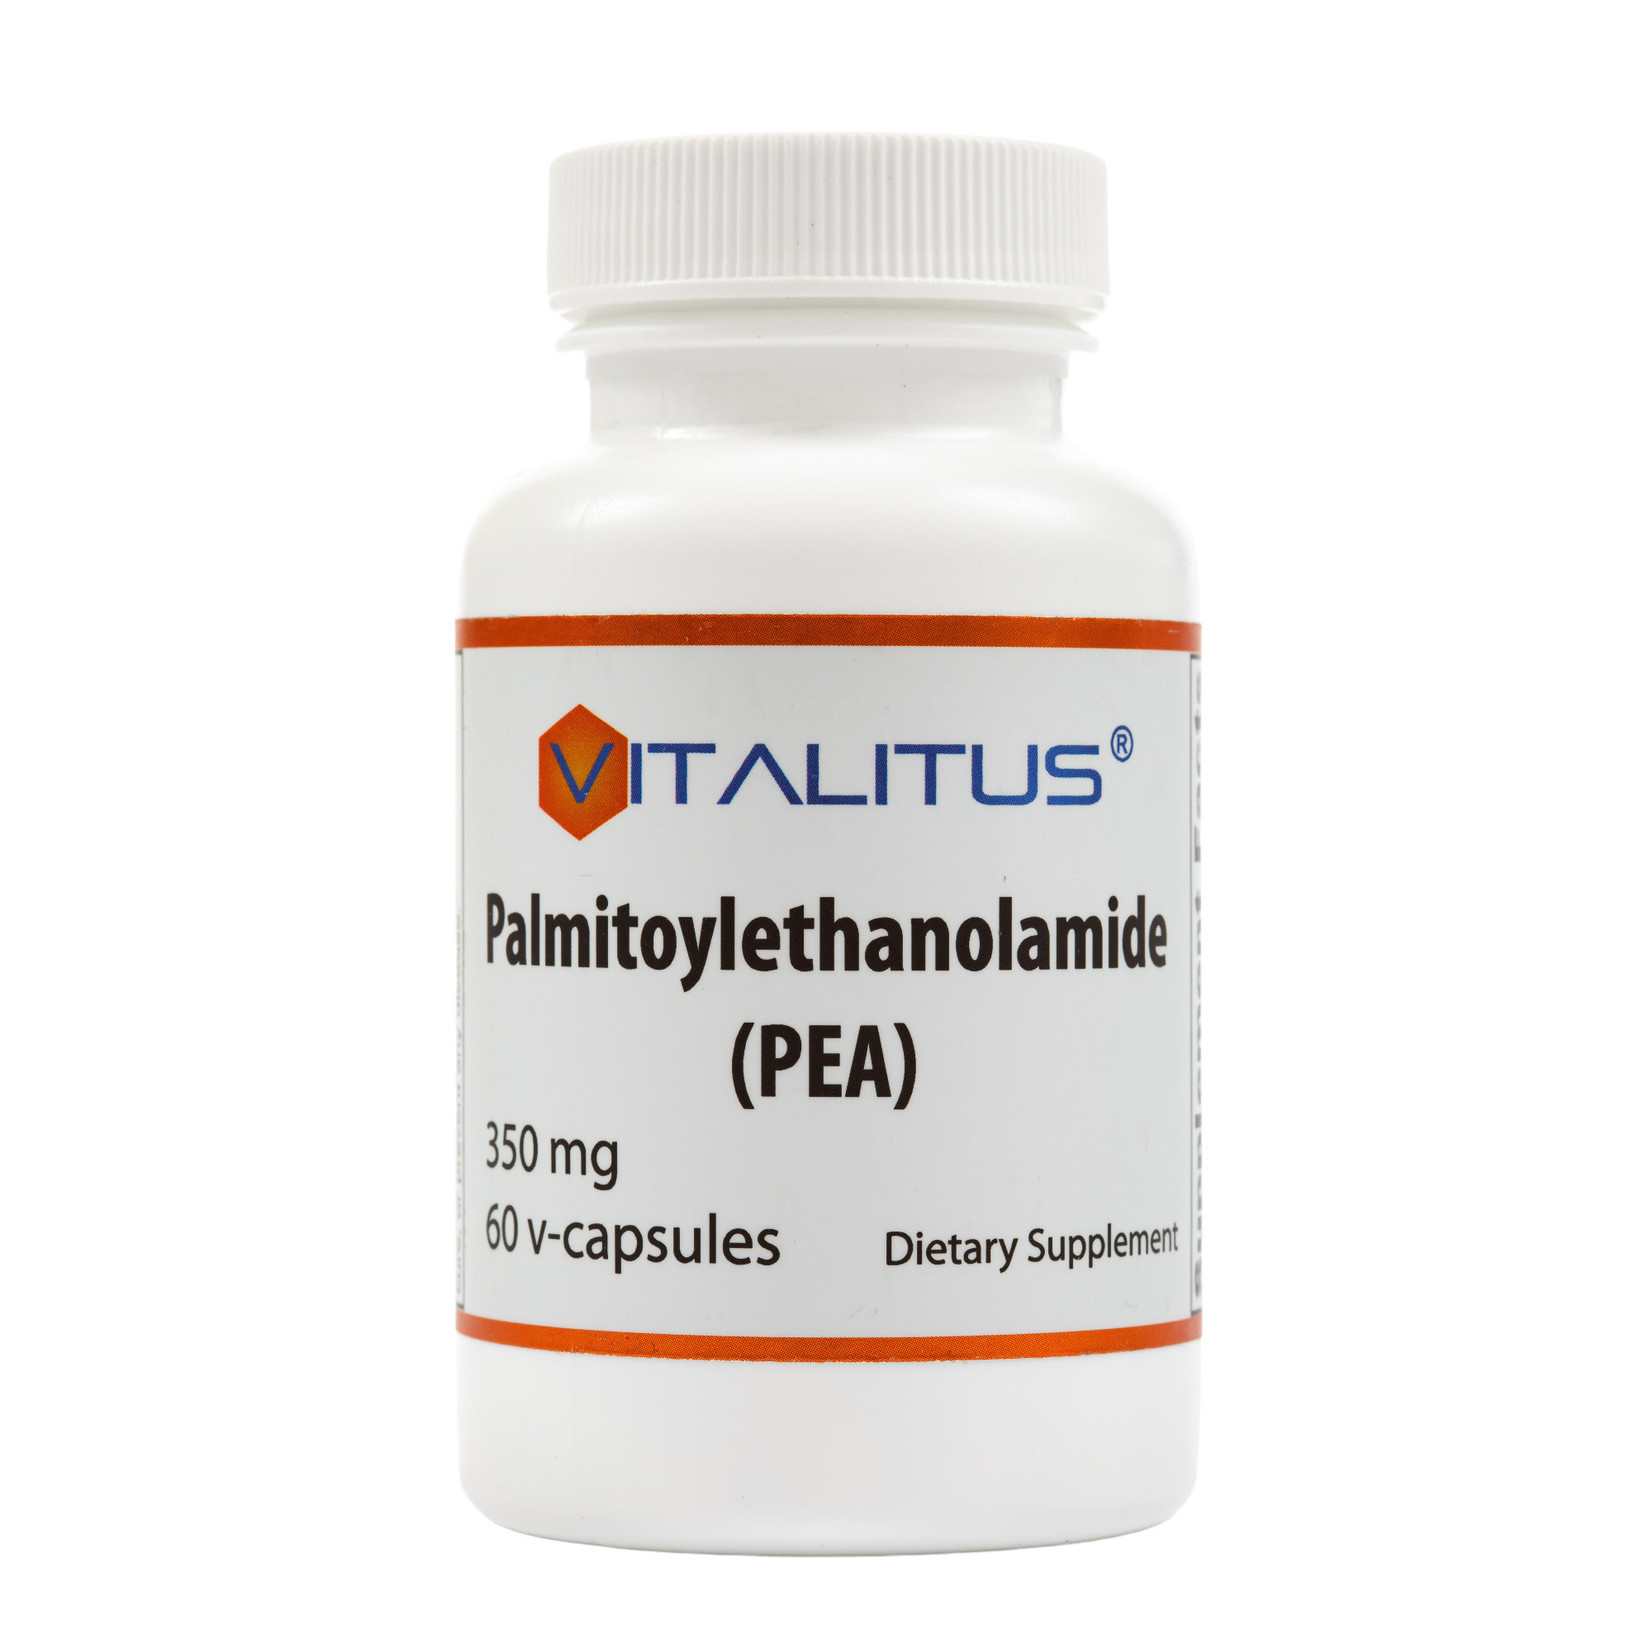 Vitalitus PEA (Palmitoylethanolamide) 350mg 60c Vitalitus